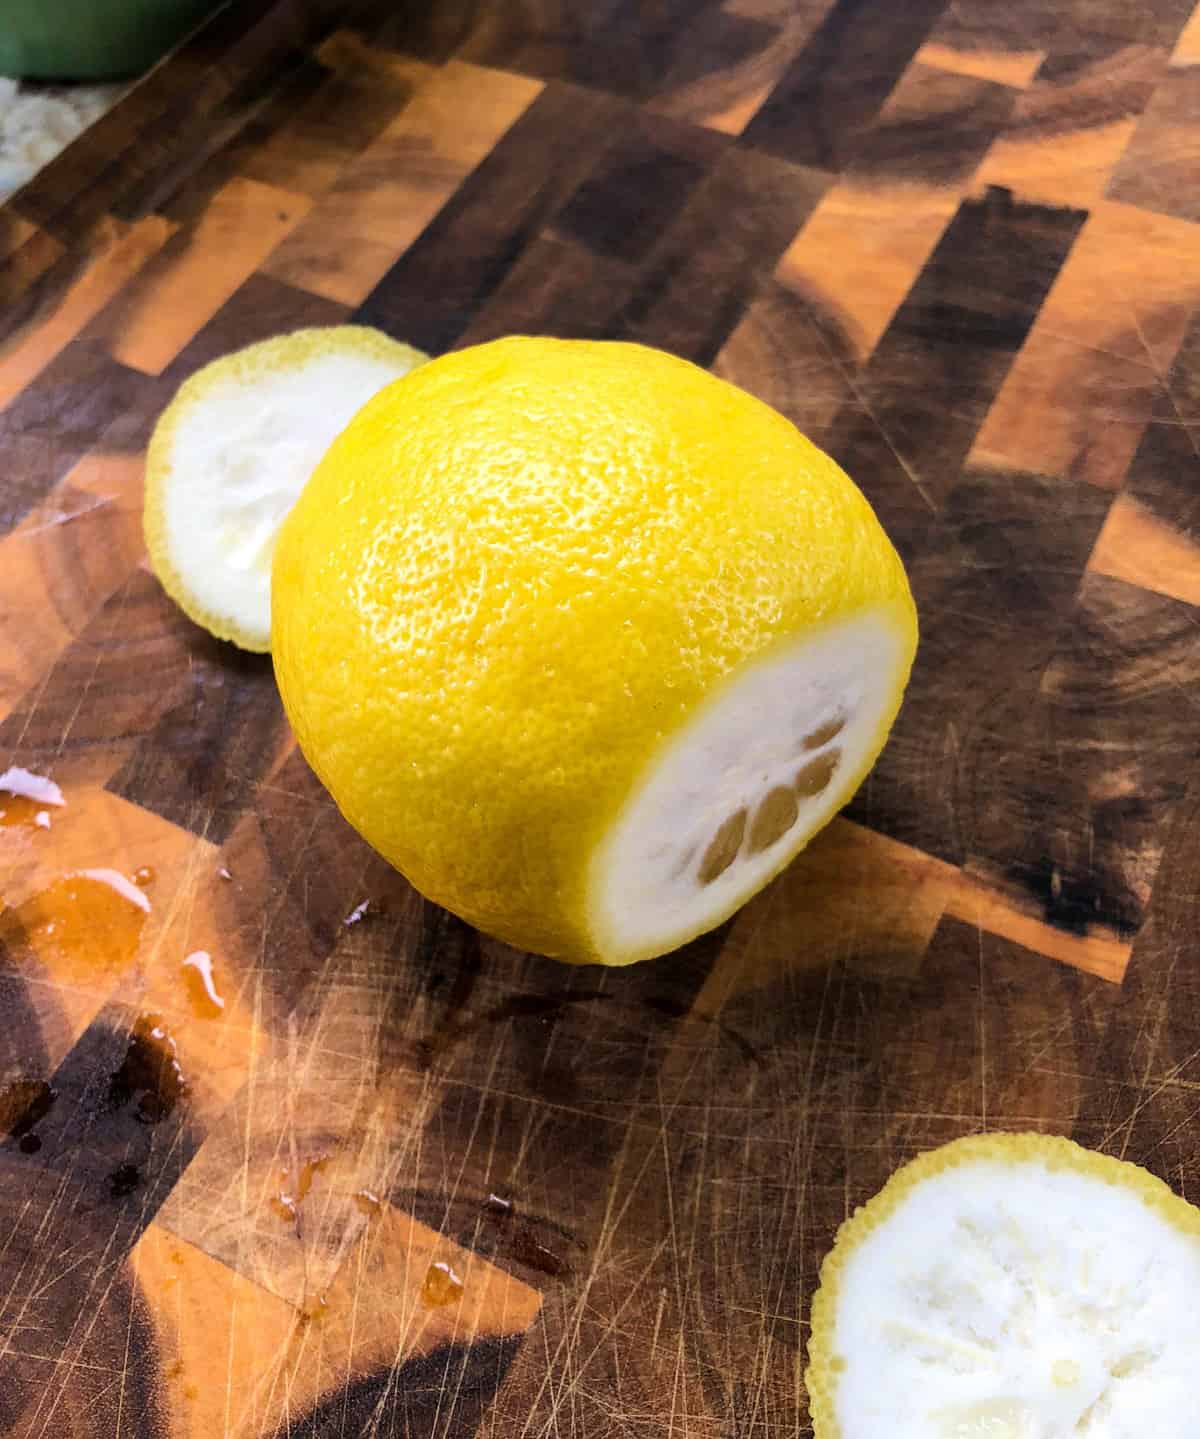 Cut ends of lemon